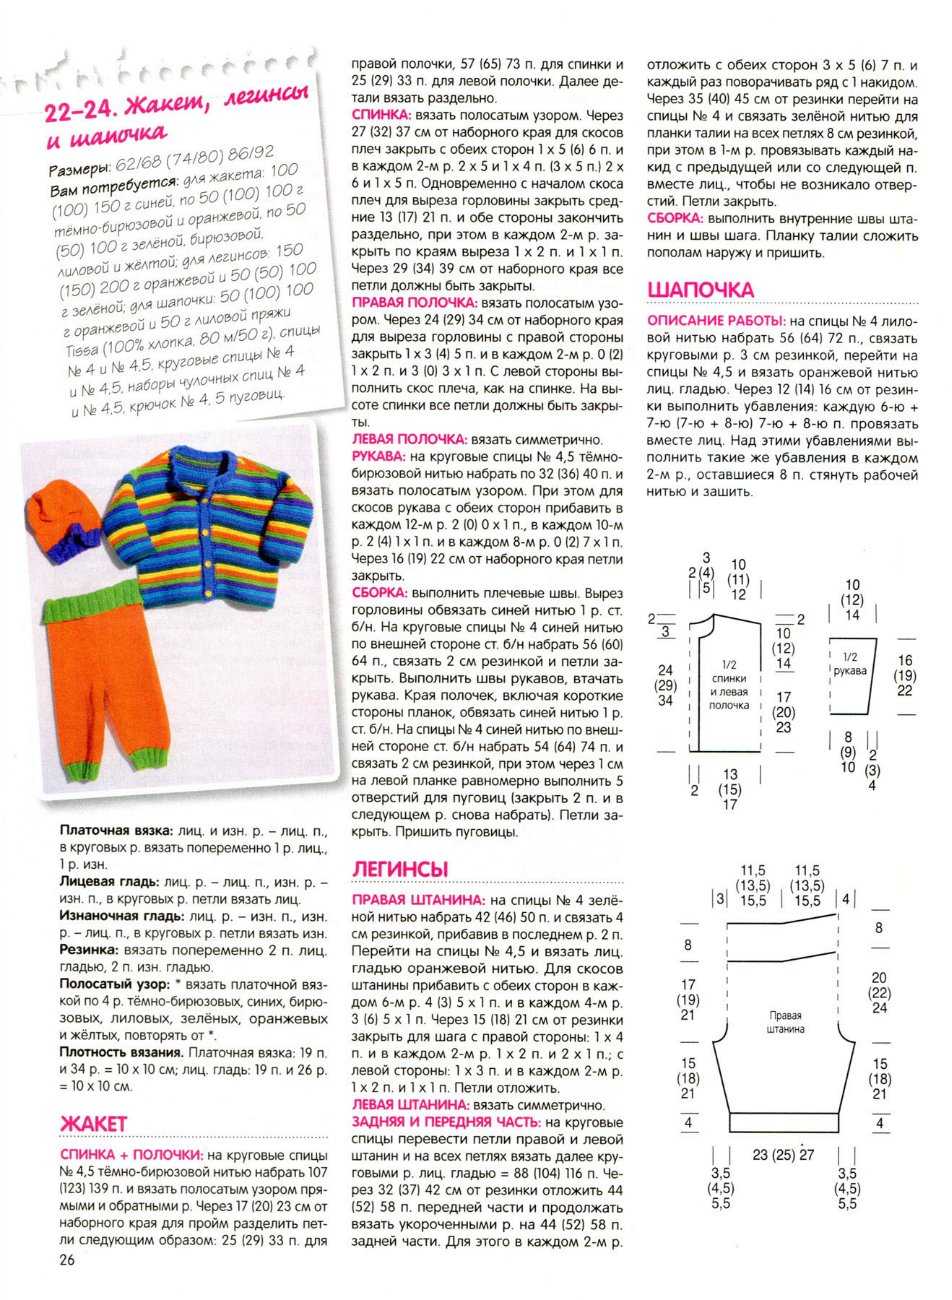 Вязание спицами для кукол со схемами и описанием